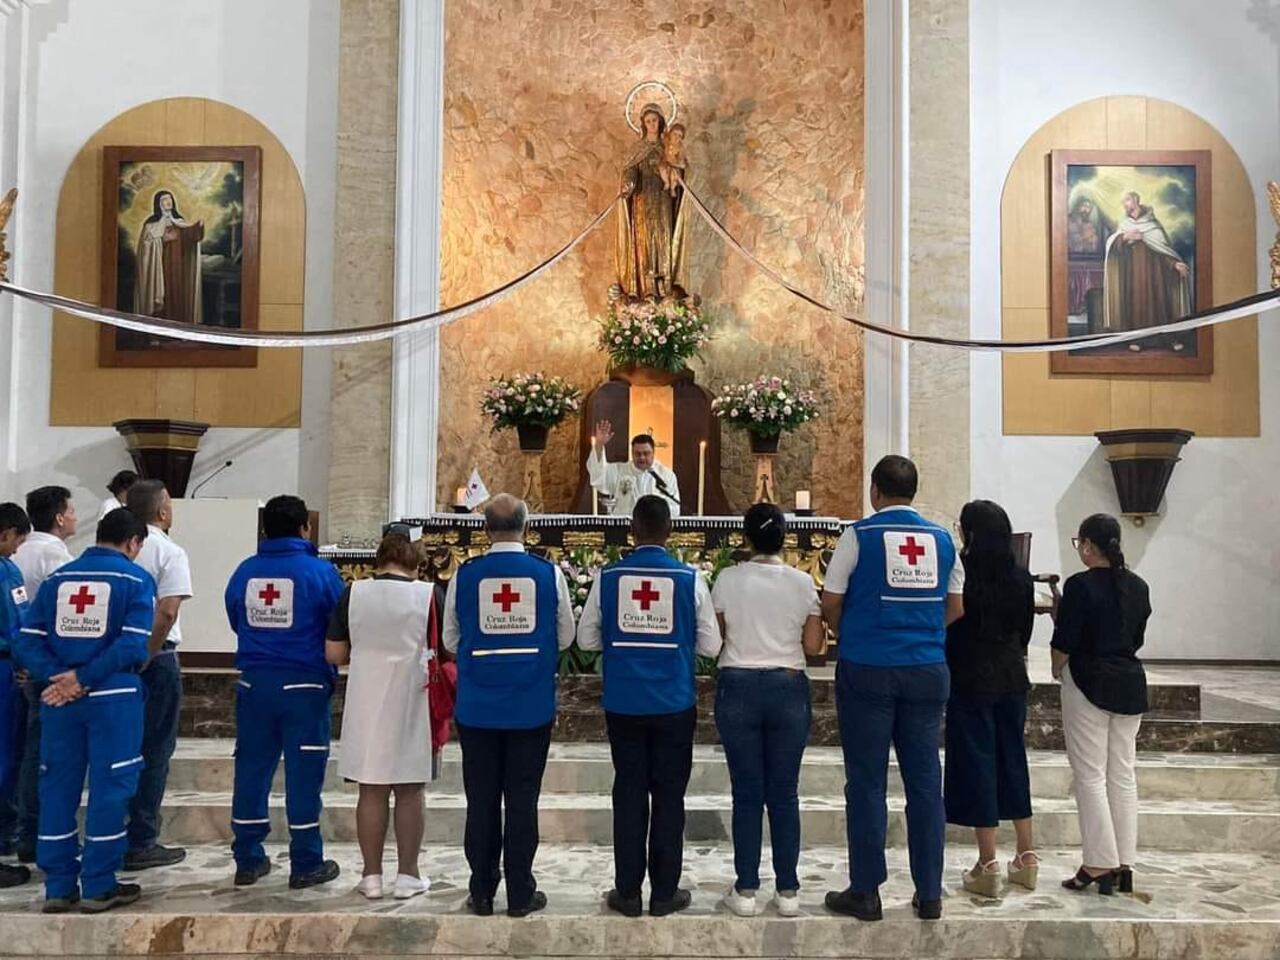 La Cruz Roja Colombiana estuvo invitada al primer día de la Novena a la Virgen del Carmen en la parroquia El Templete, el pasado viernes 7 de julio.